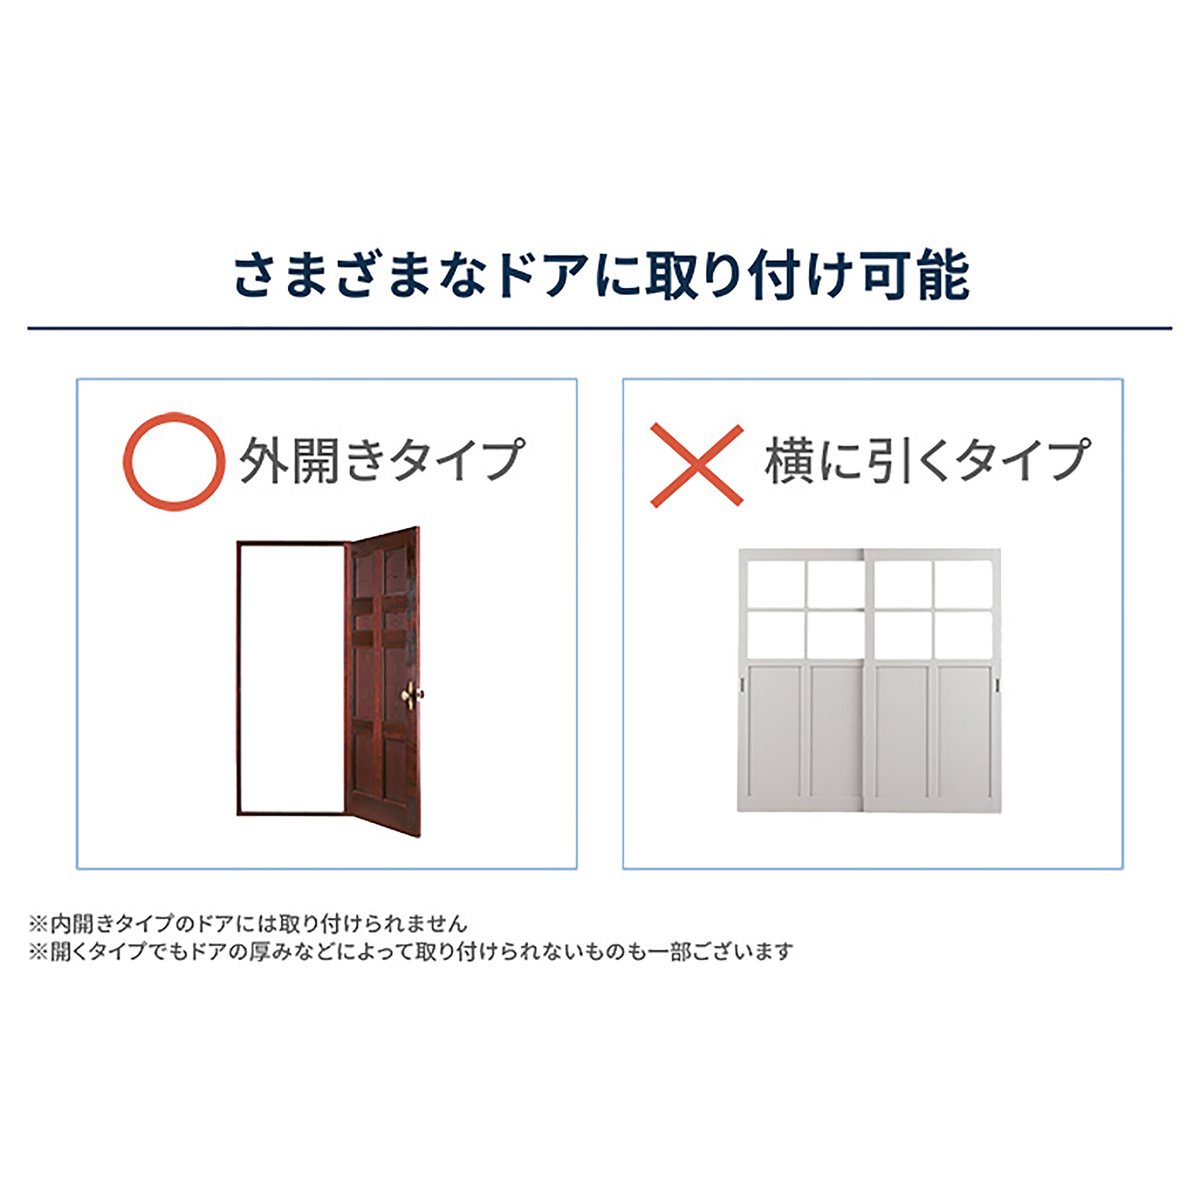 工事がいらない玄関用オートロック錠 セリュールアミュレット - QVC.jp